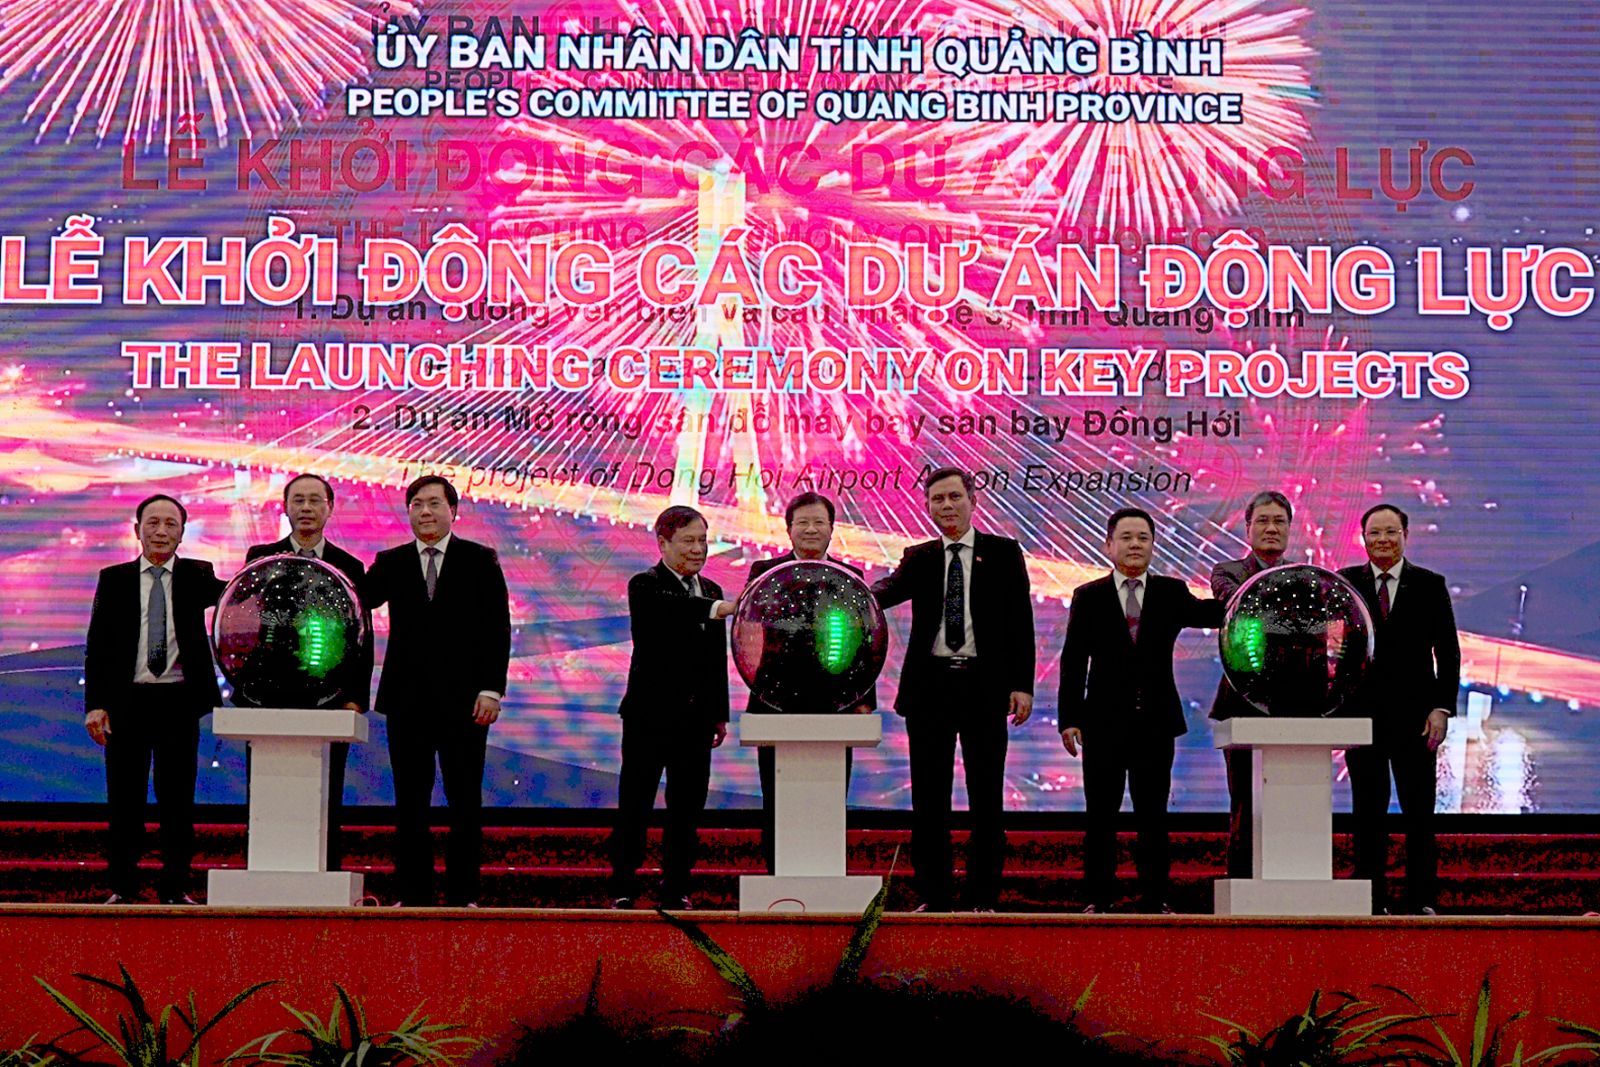 Phó Thủ tướng Trịnh Đình Dũng và Lãnh đạo tỉnh Quảng Bình bấm nút khởi động các dự án động lực quan trọng của tỉnh